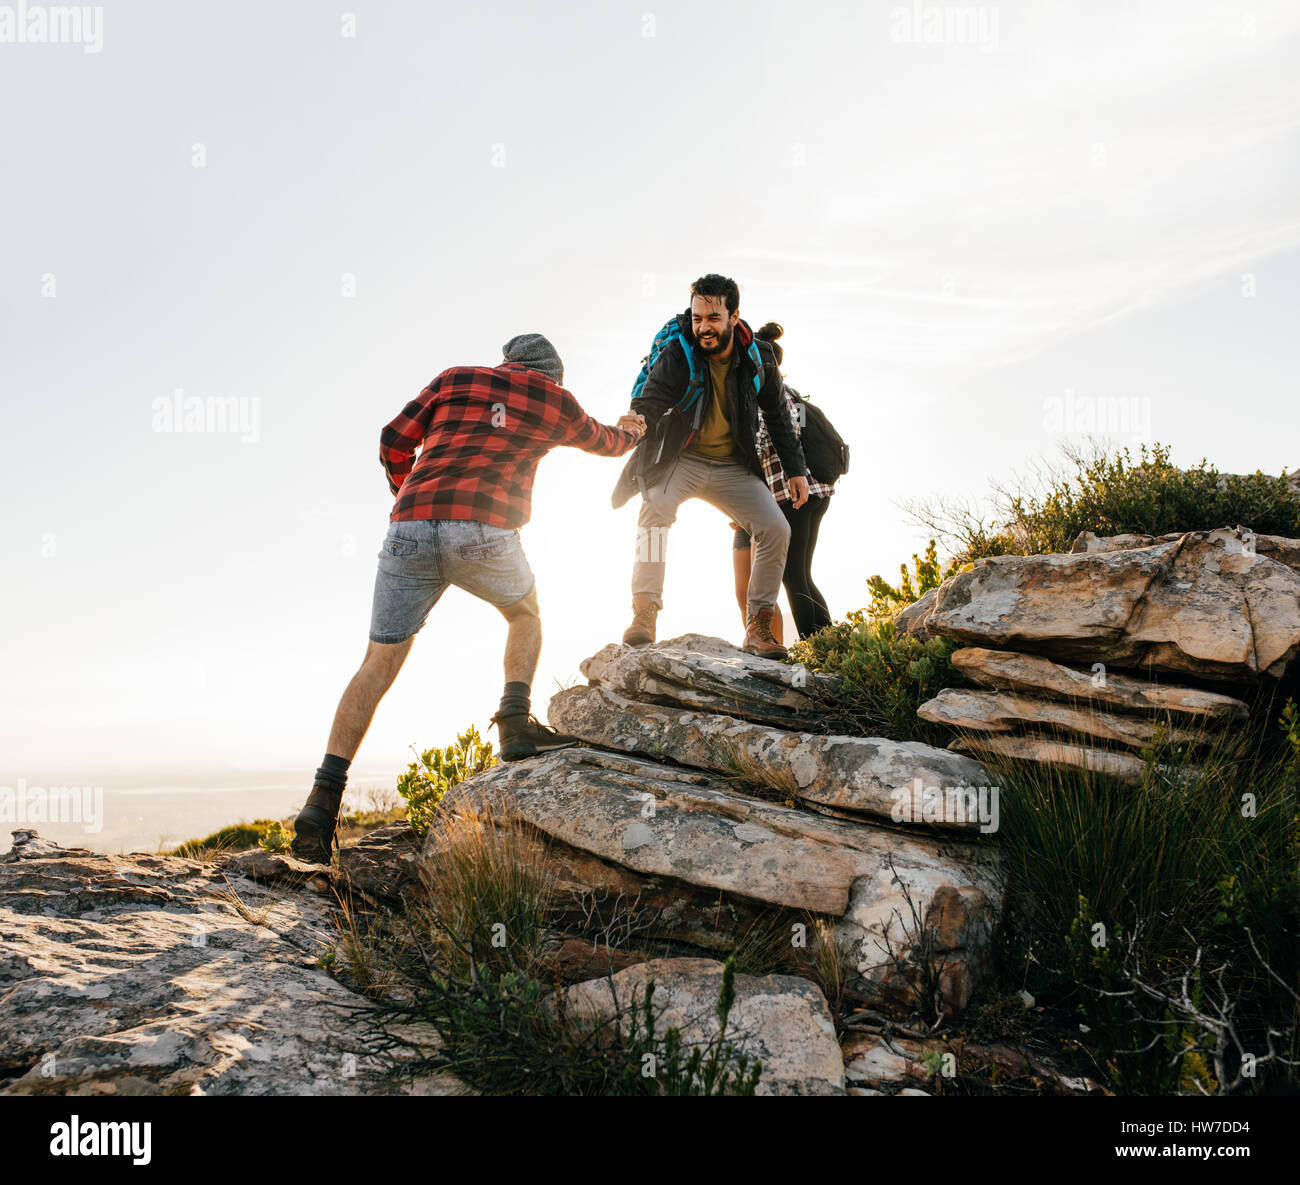 Groupe de randonneurs marchant dans la nature. Les amis de prendre une excursion sur une montagne. Banque D'Images